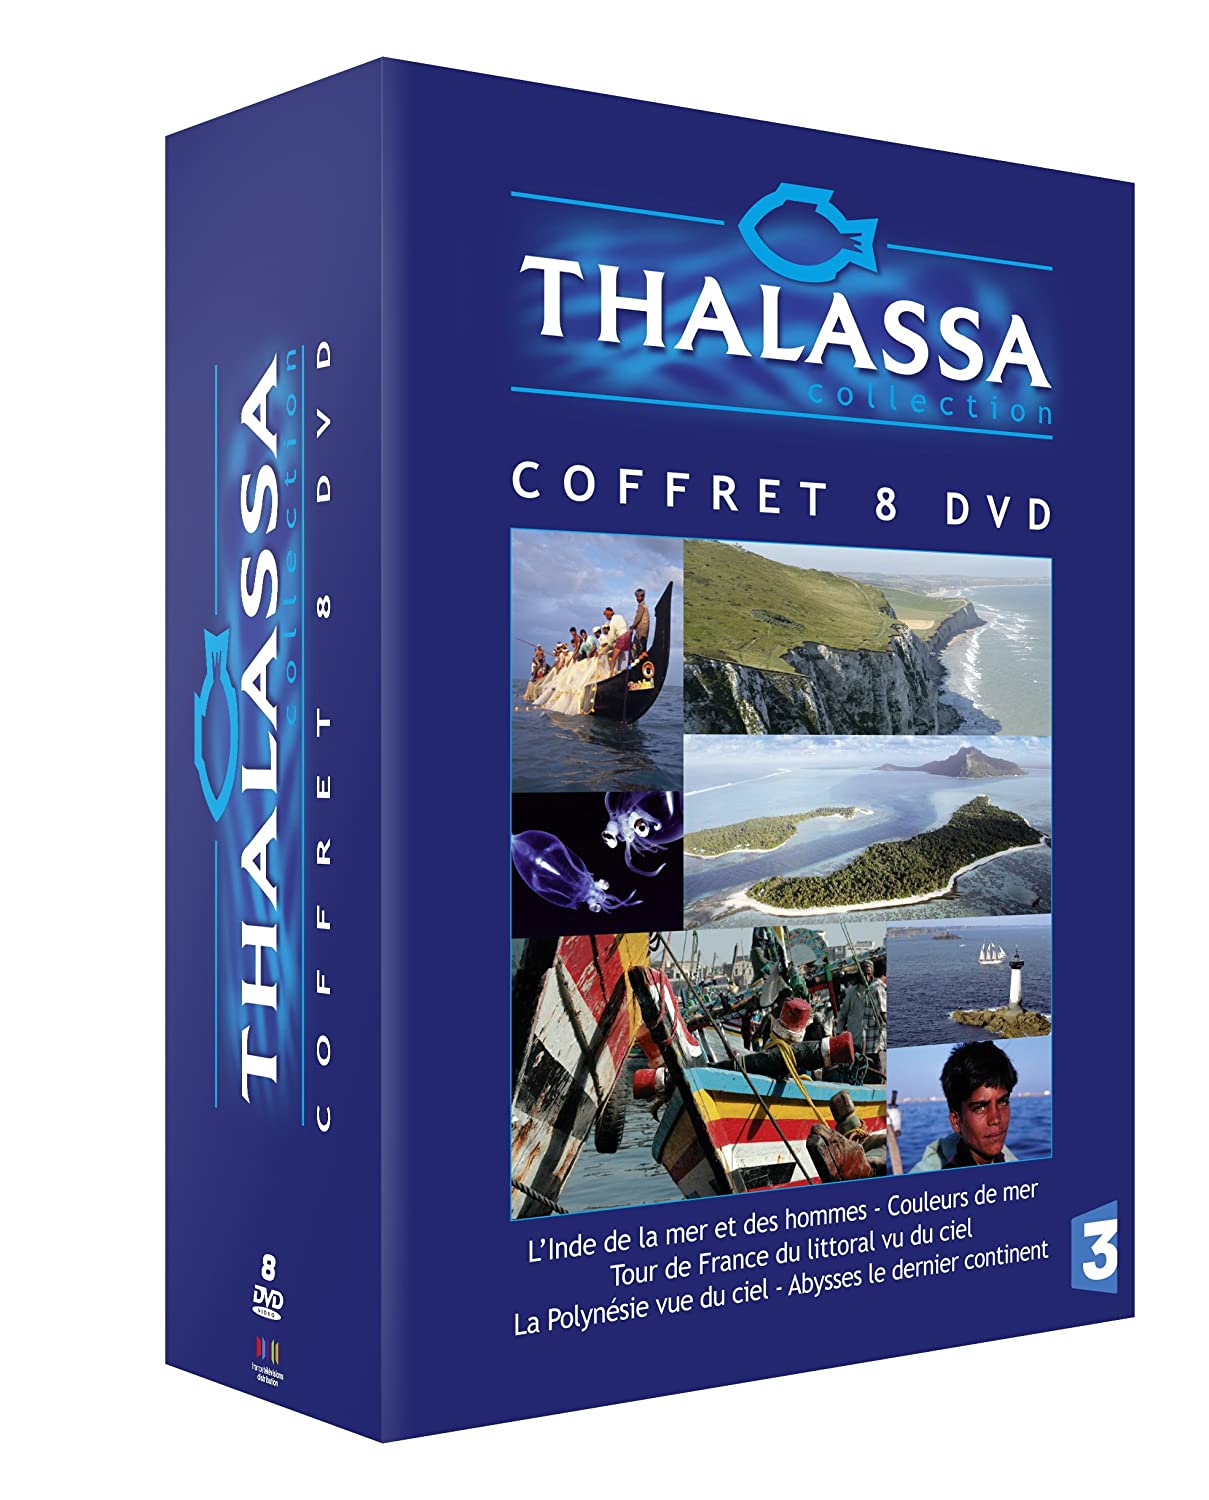 Thalassa Coffret 8 DVD : L'inde de la mer et des hommes / Couleurs de mer / 